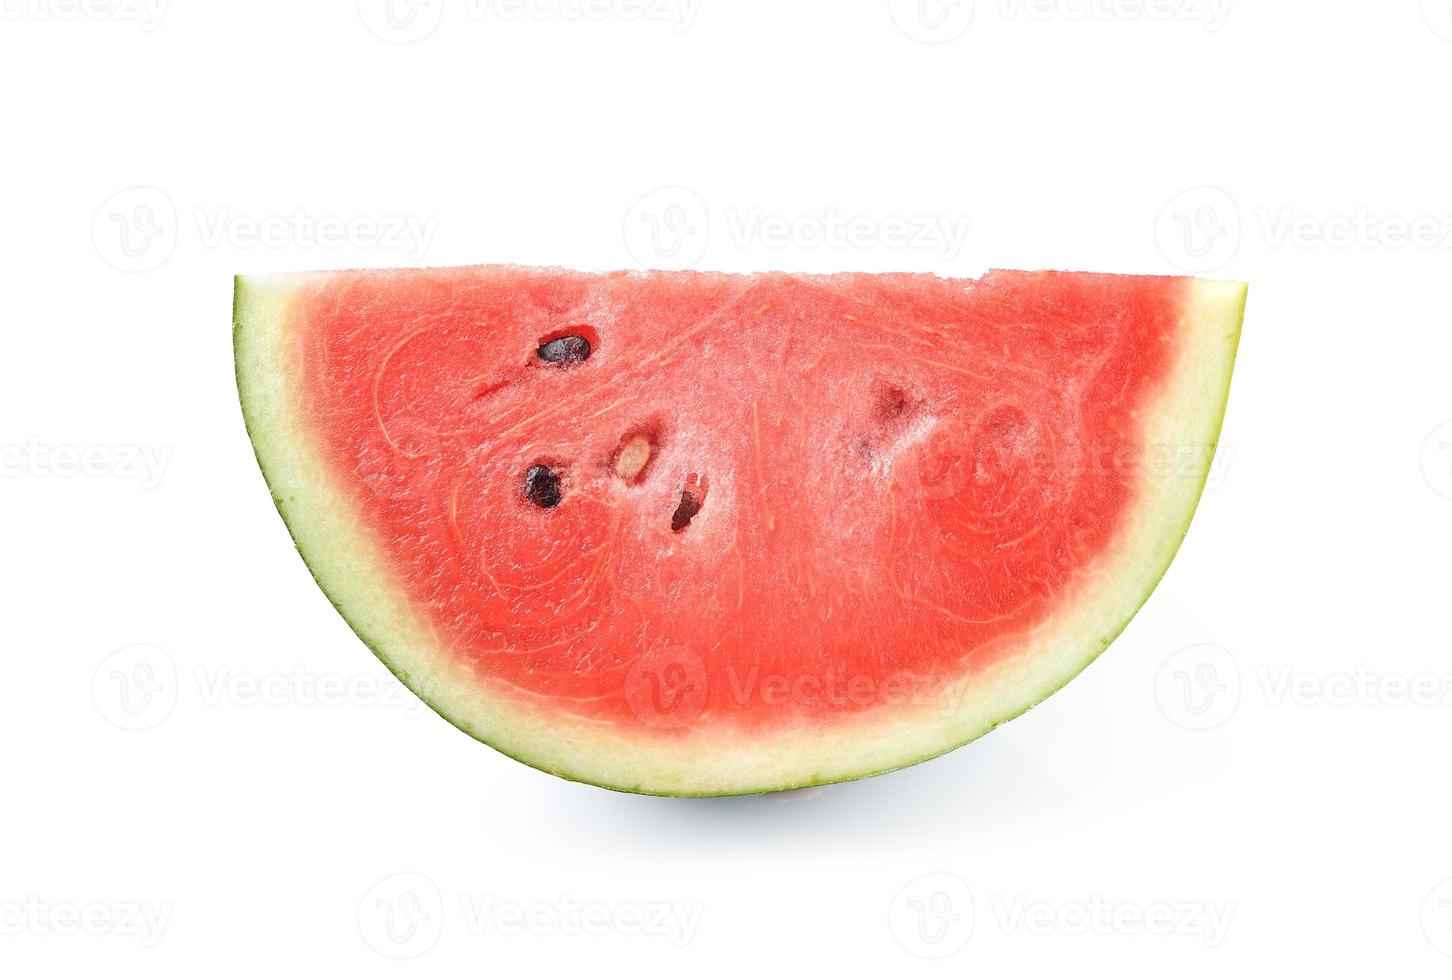 Scheibe Wassermelone auf weißem Hintergrund foto